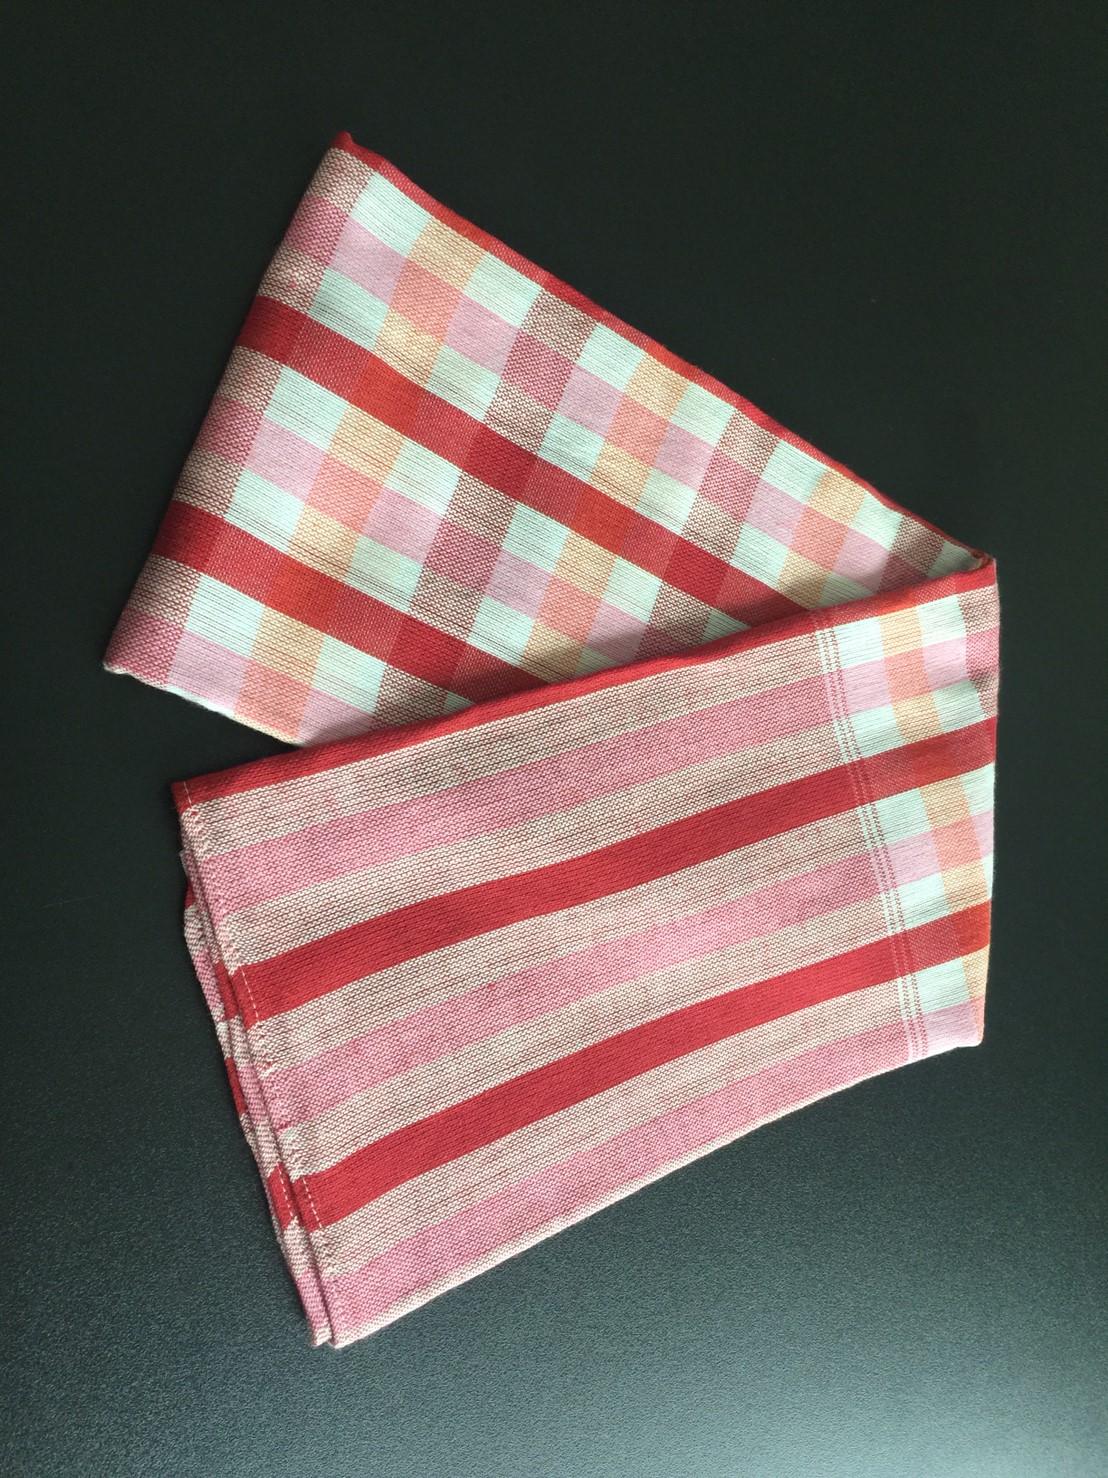 ผ้าขาวม้าแบบผ้าพันคอหรือผ้าคลุมไหล่ เนื้อผ้านุ่ม ทันสมัย สีขาวแดงชมพู ลายสก๊อต (A loincloth modernize pattern and soft touch line read pink white)